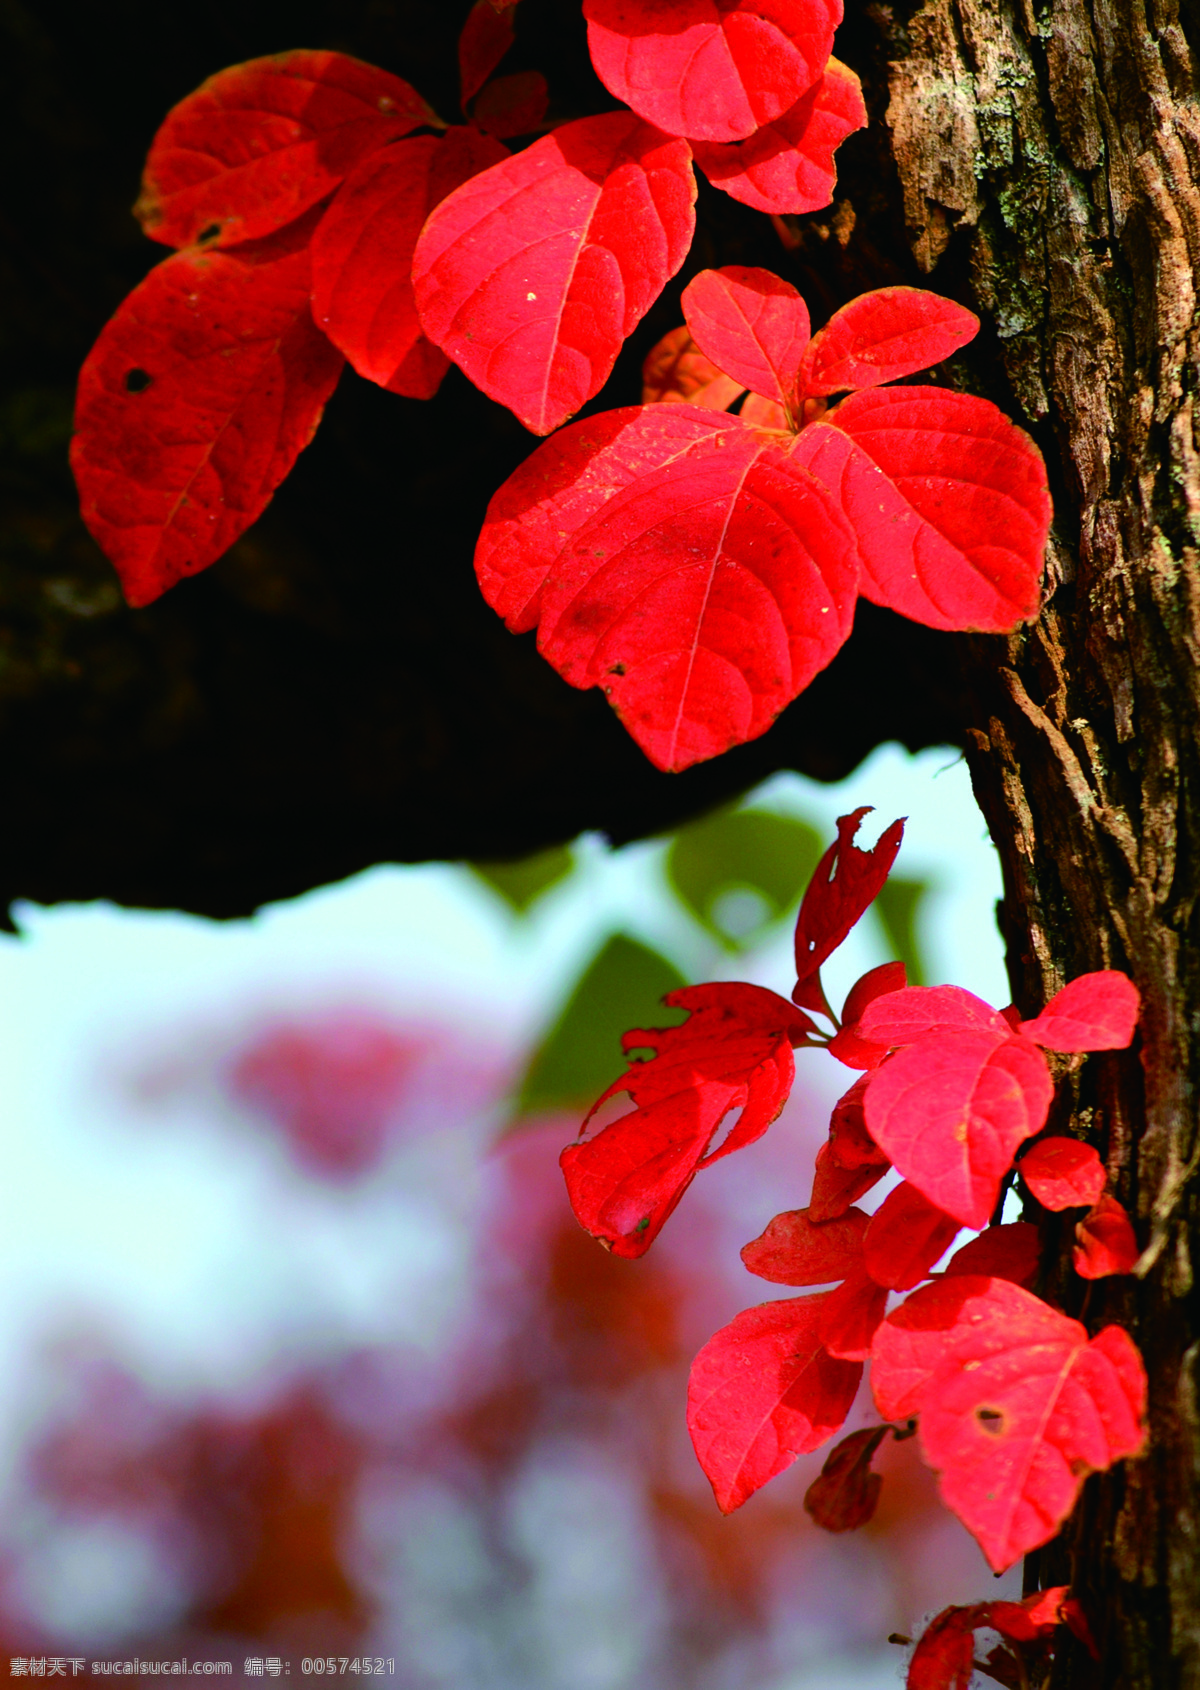 红色 树林 风景 图 红枫树 风景图 壁画 自然风景 生物世界 树木树叶